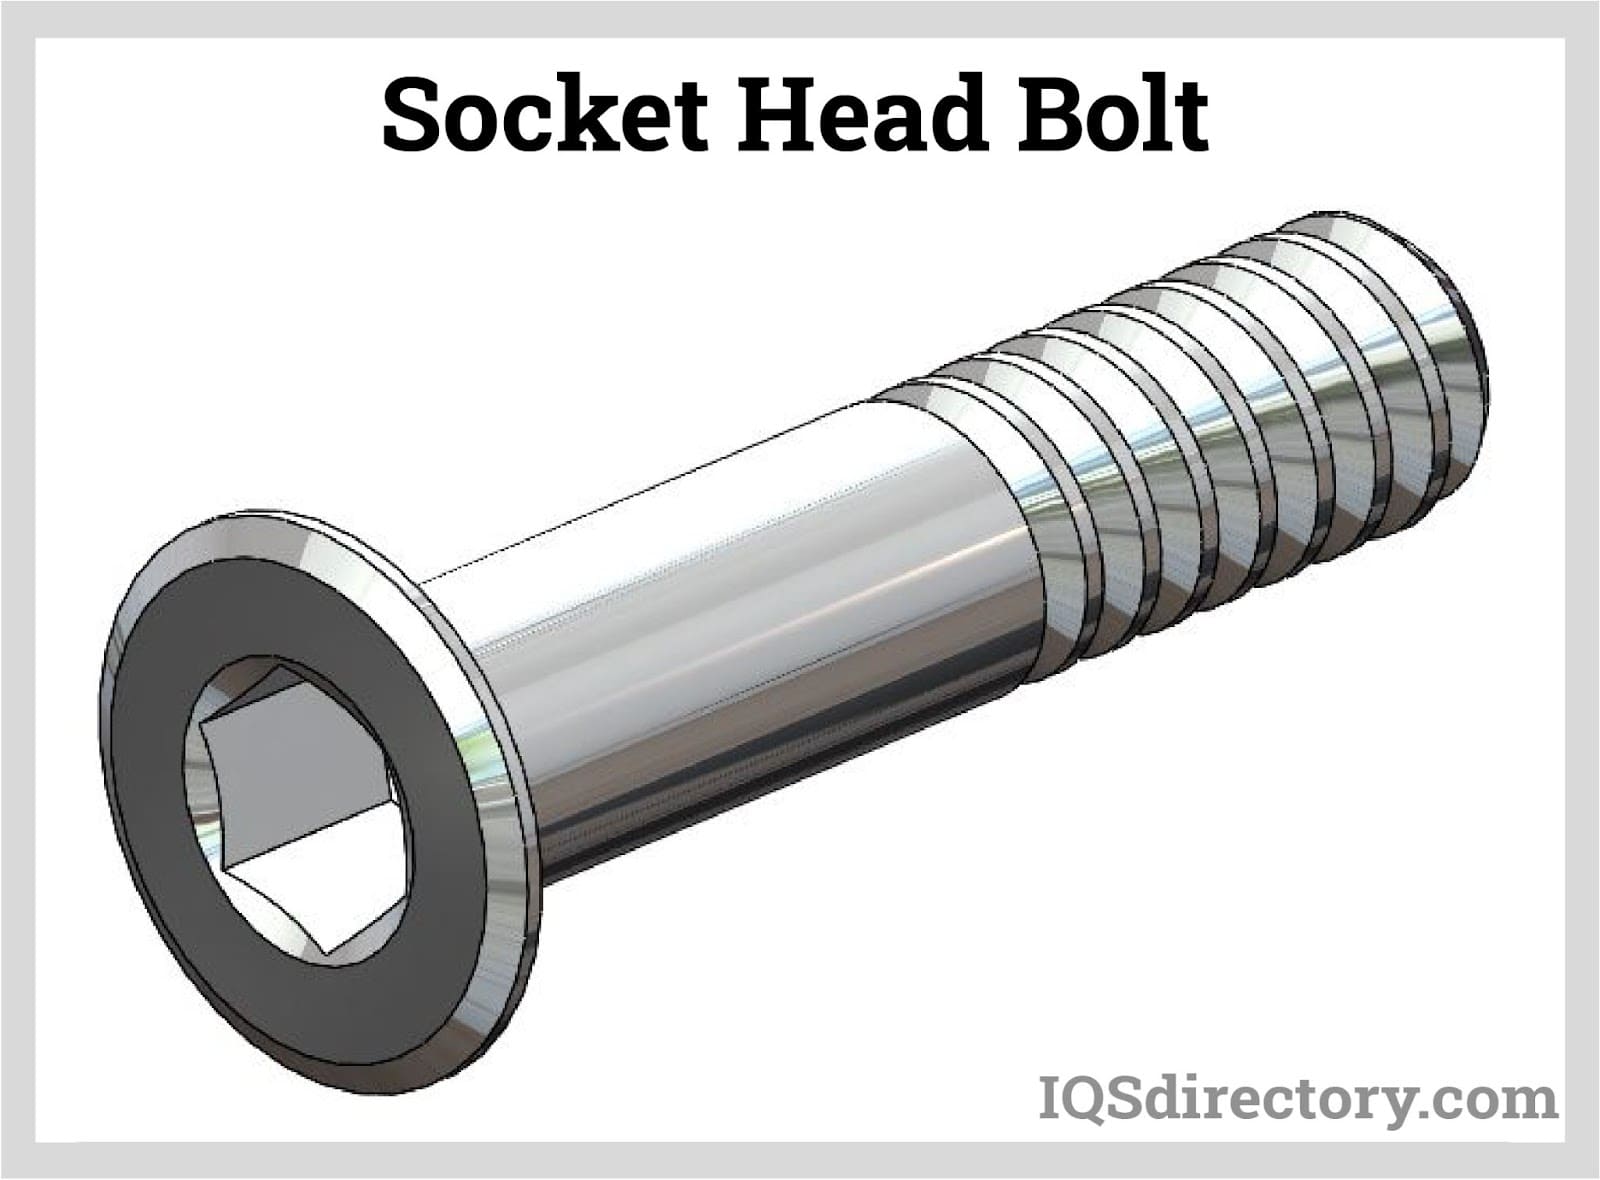 Socket Head Bolt